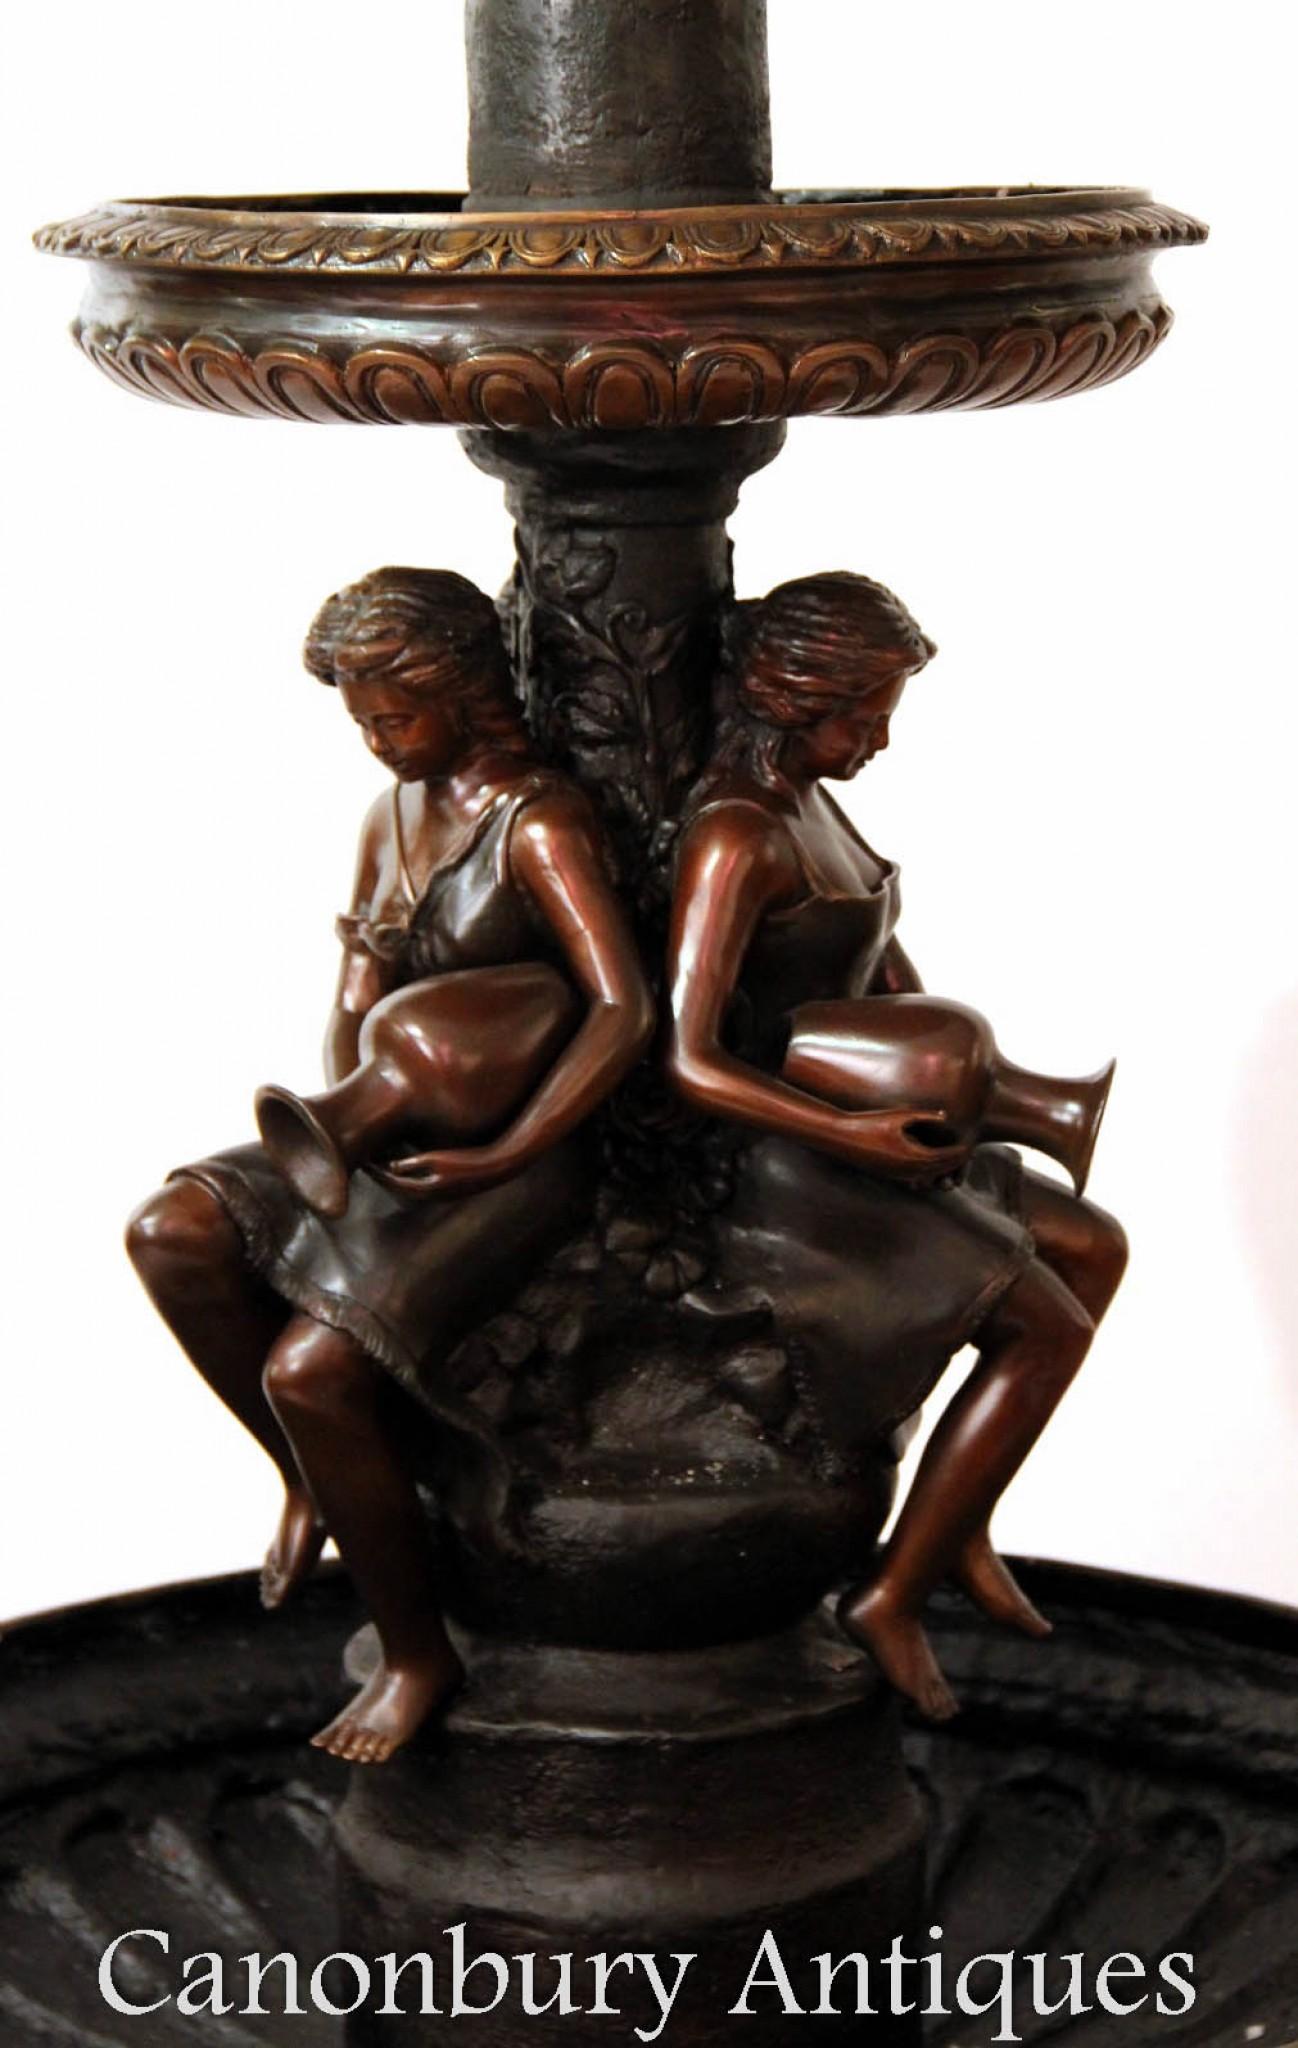 Jolie fontaine de jardin en bronze
Deux étages, le premier étage présente les vierges classiques avec des urnes Amphora.
Belle patine du bronze
Pouvez-vous l'imaginer ainsi configuré et ruisselant d'eau ?
Acheté à une entreprise de récupération